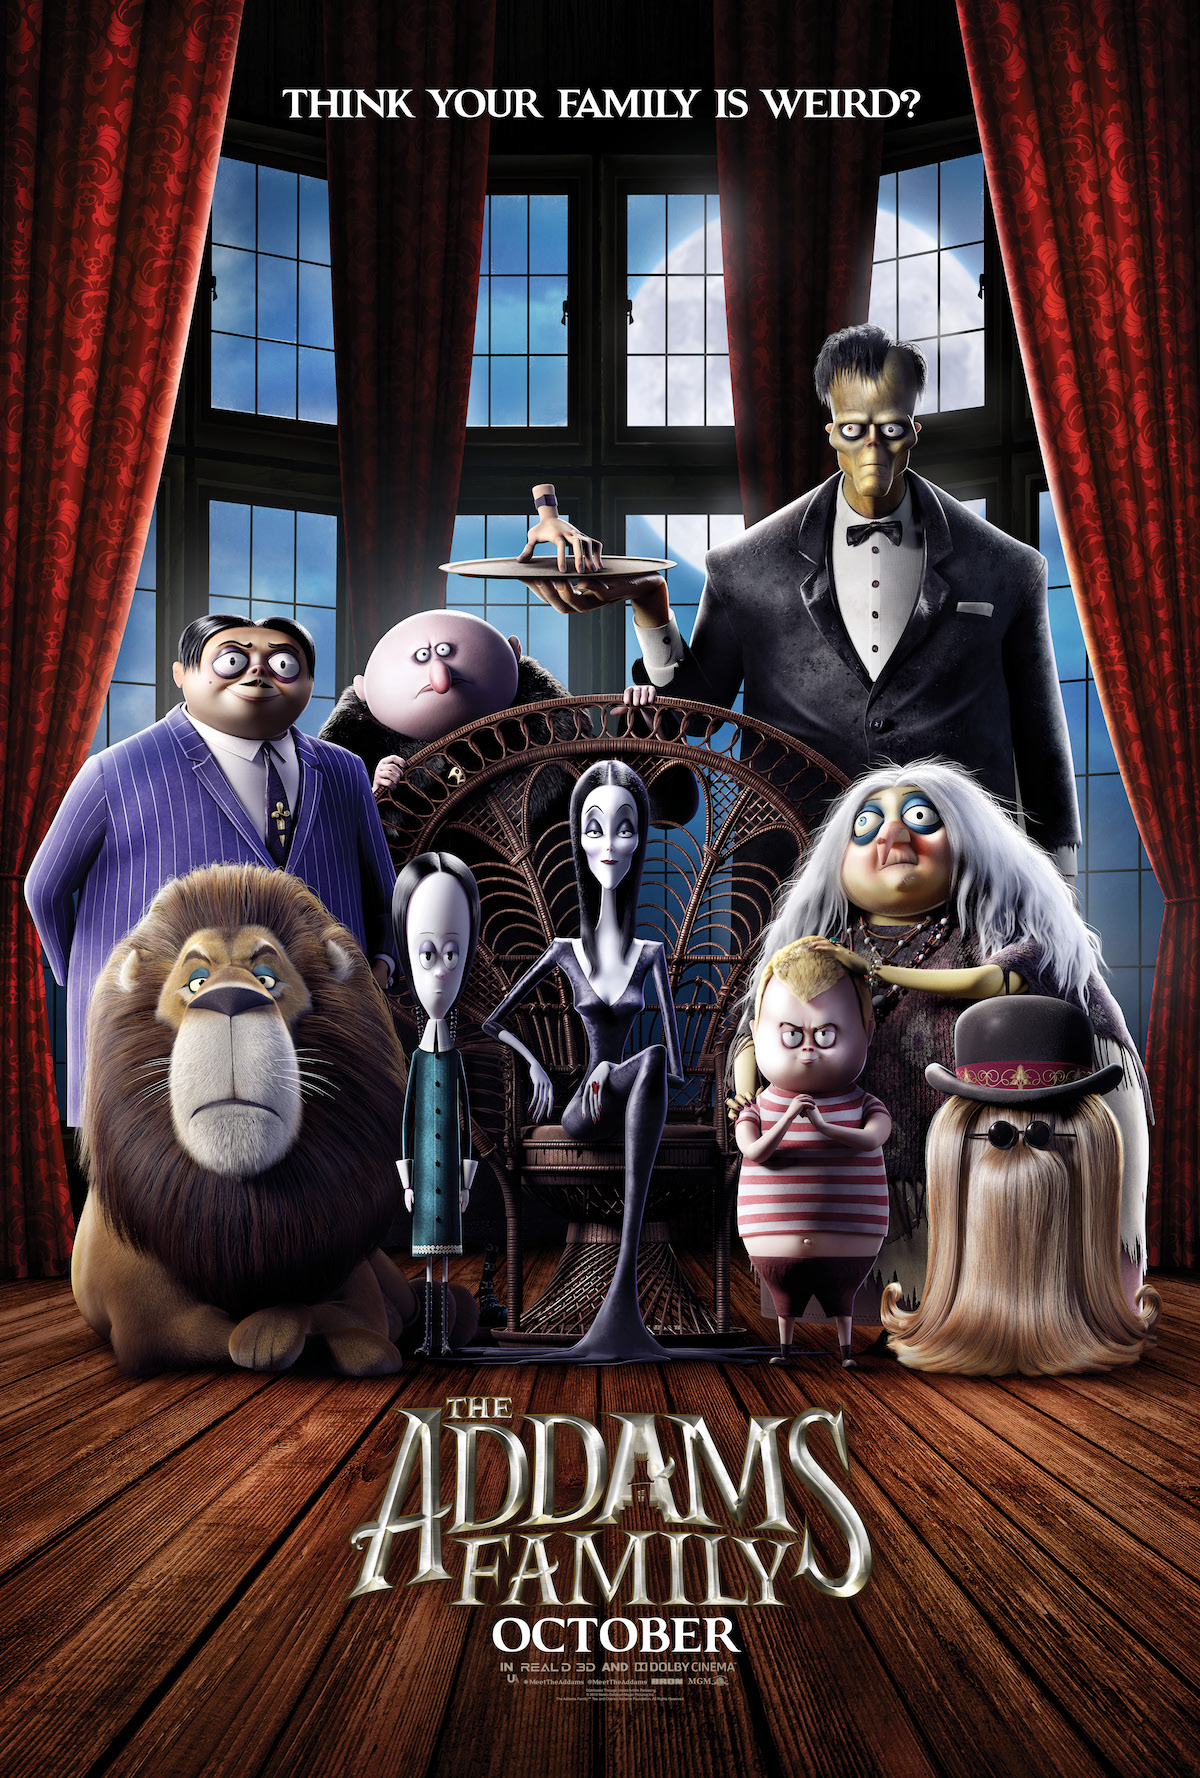 ดูหนังออนไลน์ฟรี The Addams Family ตระกูลนี้ผียังหลบ 2019 พากย์ไทย